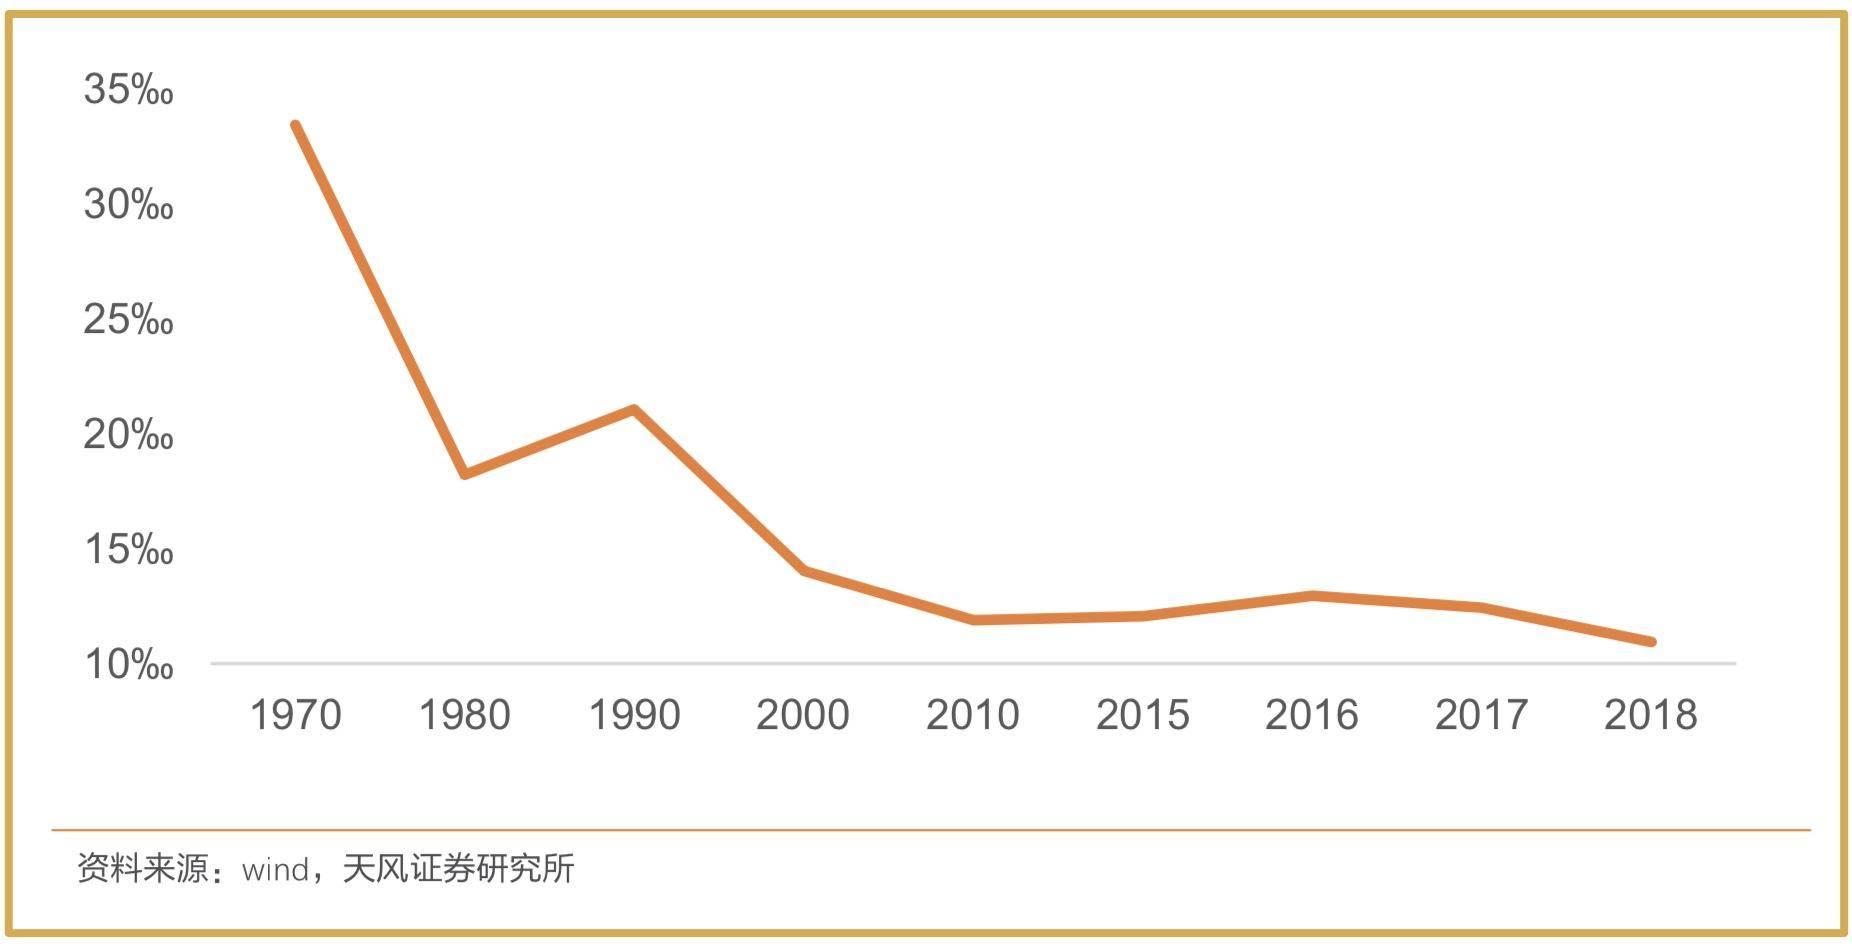 中国人口老龄化真的严重吗?